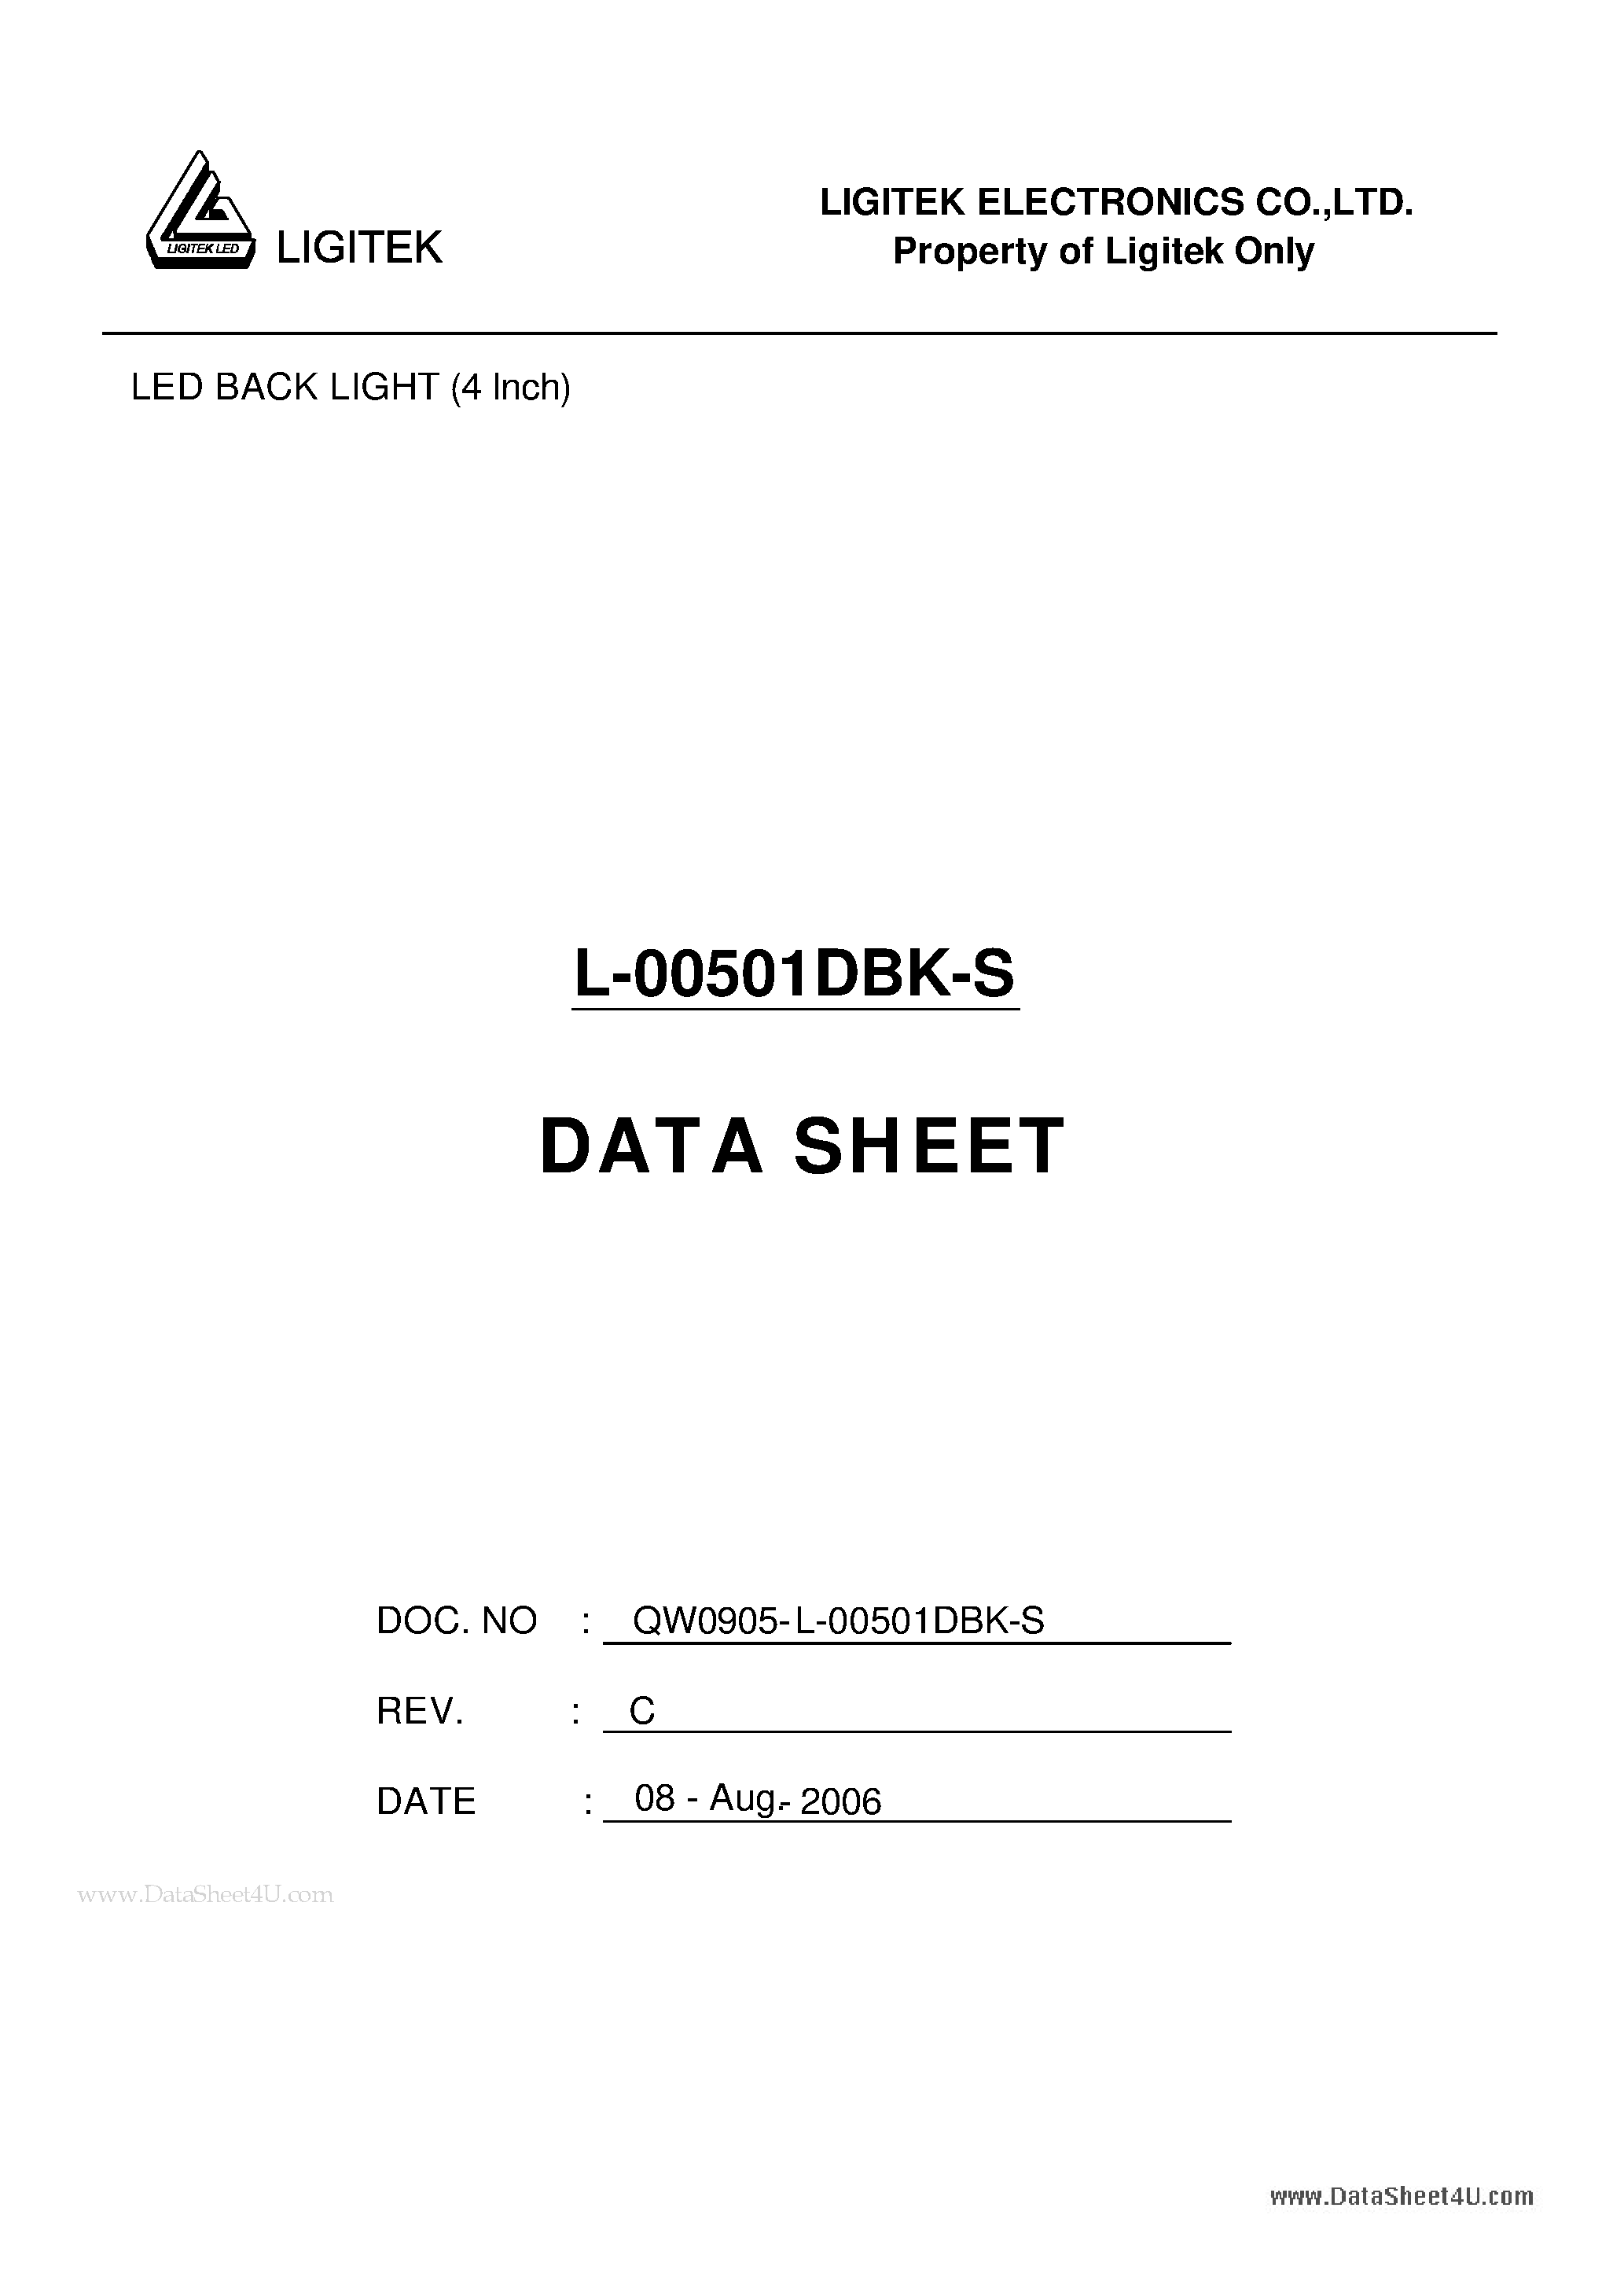 Даташит L-00501DBK-S - LED BACK LIGHT (4 Inch) страница 1